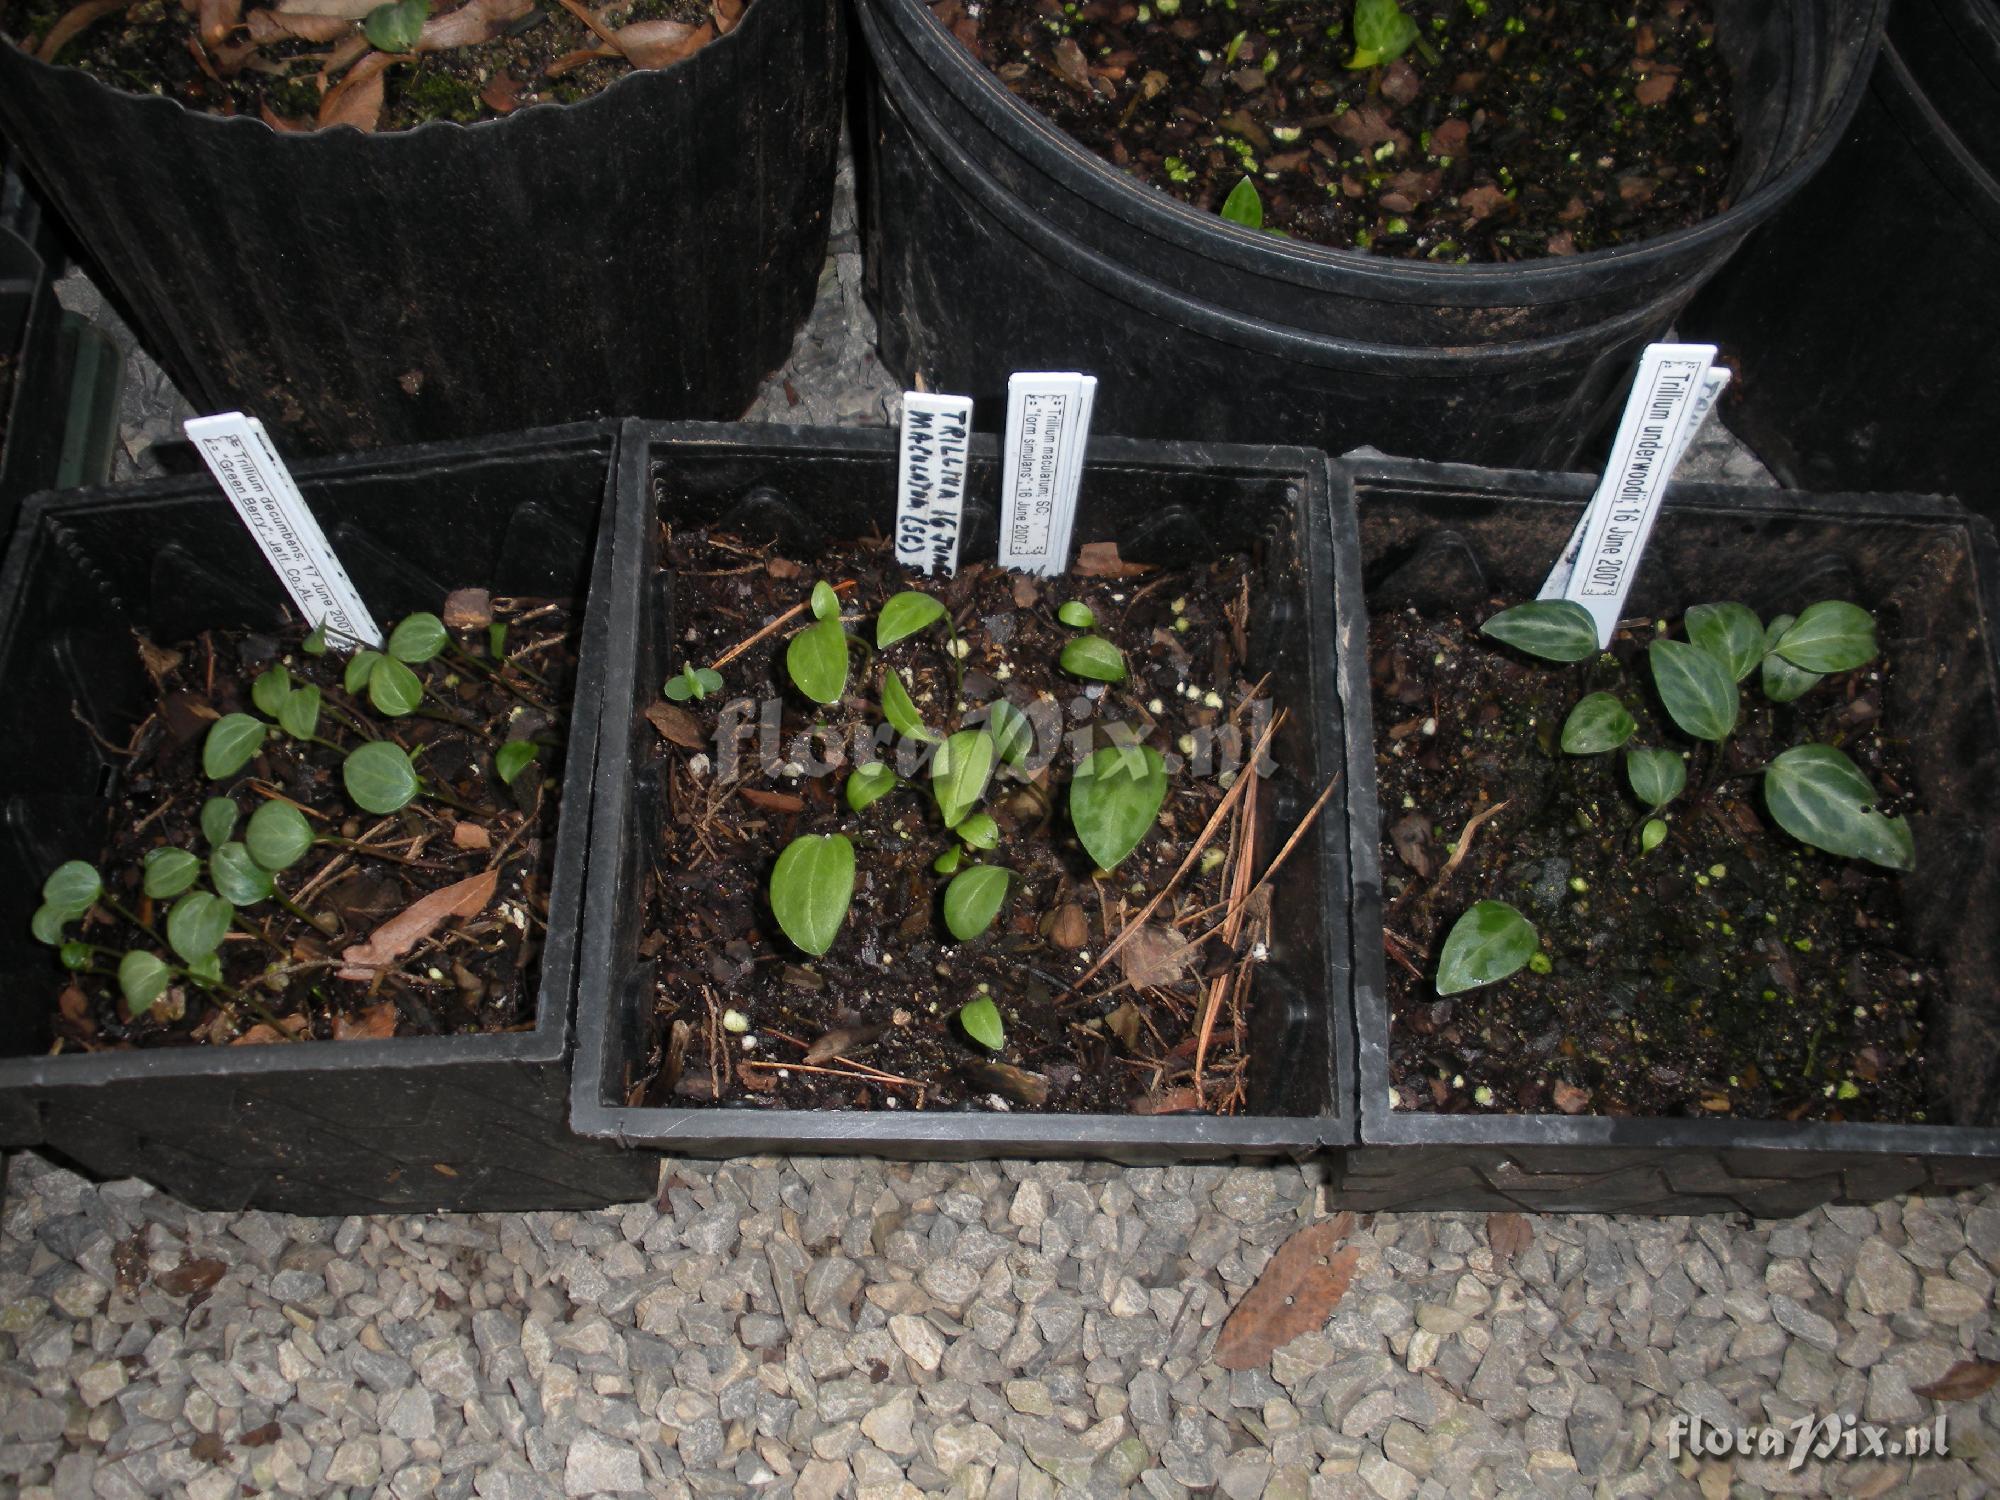 Trillium seedlings